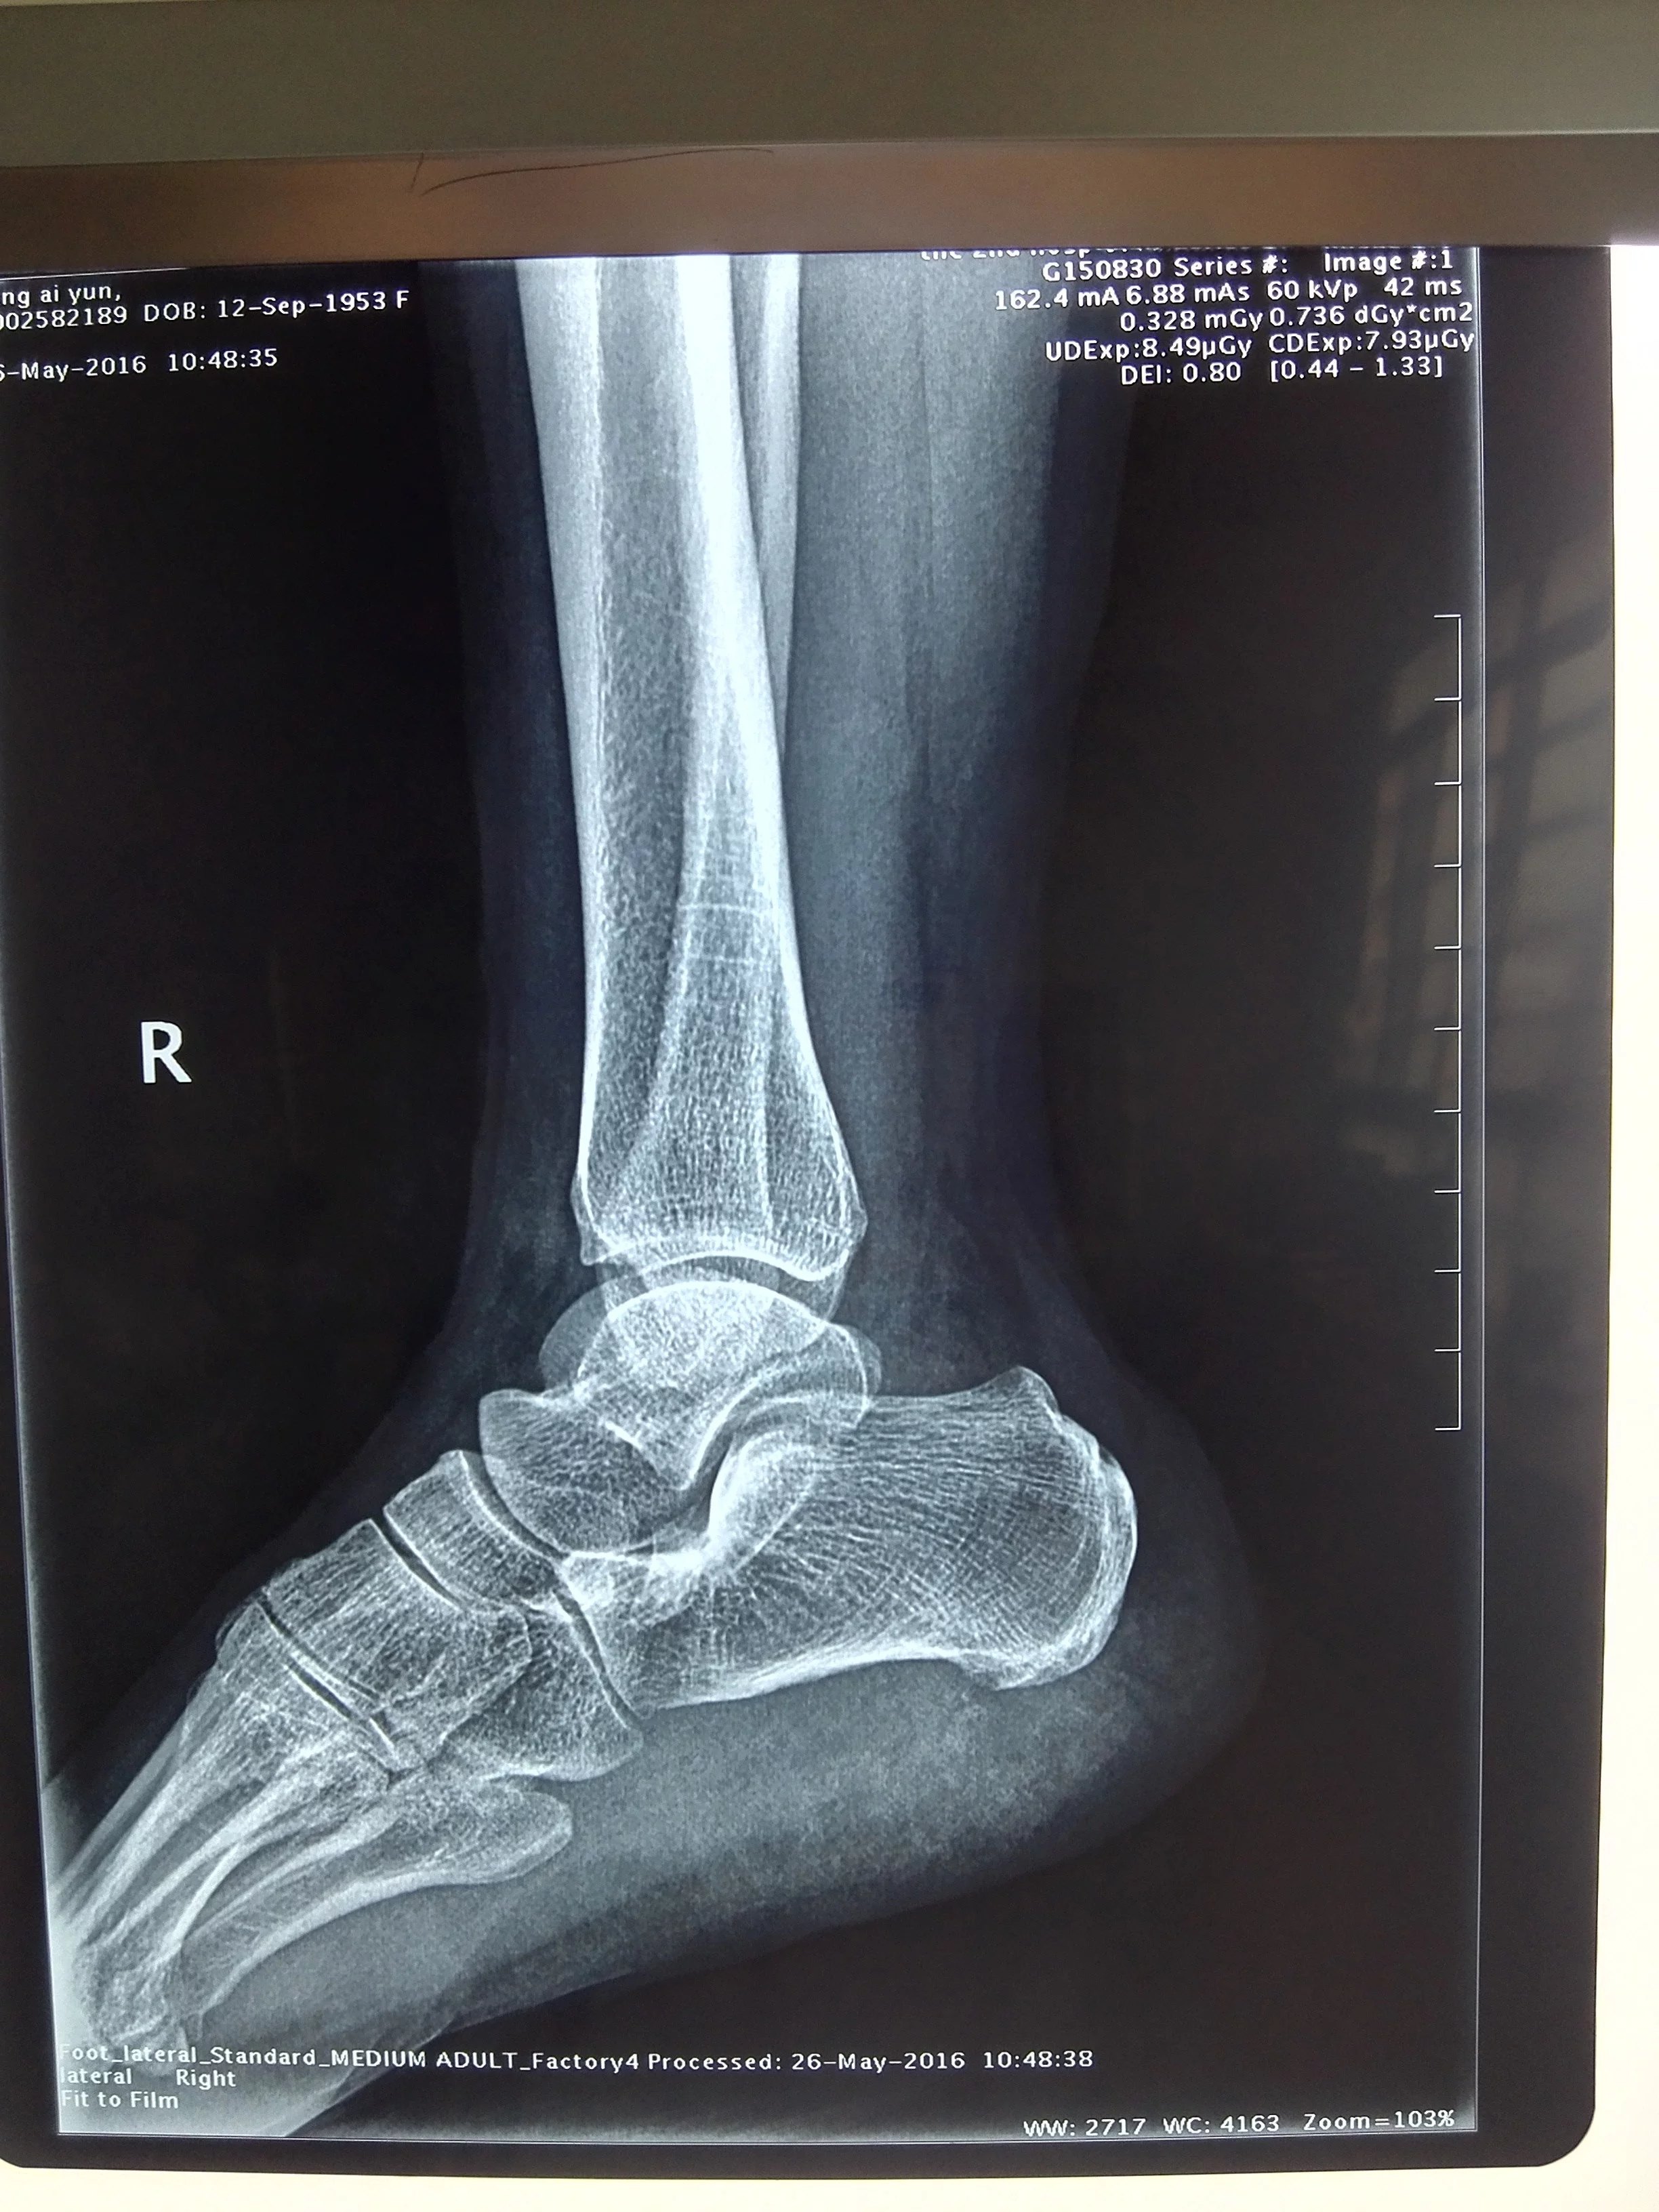 足底筋膜炎足跟痛常见的一种原因如何诊治可以手术吗